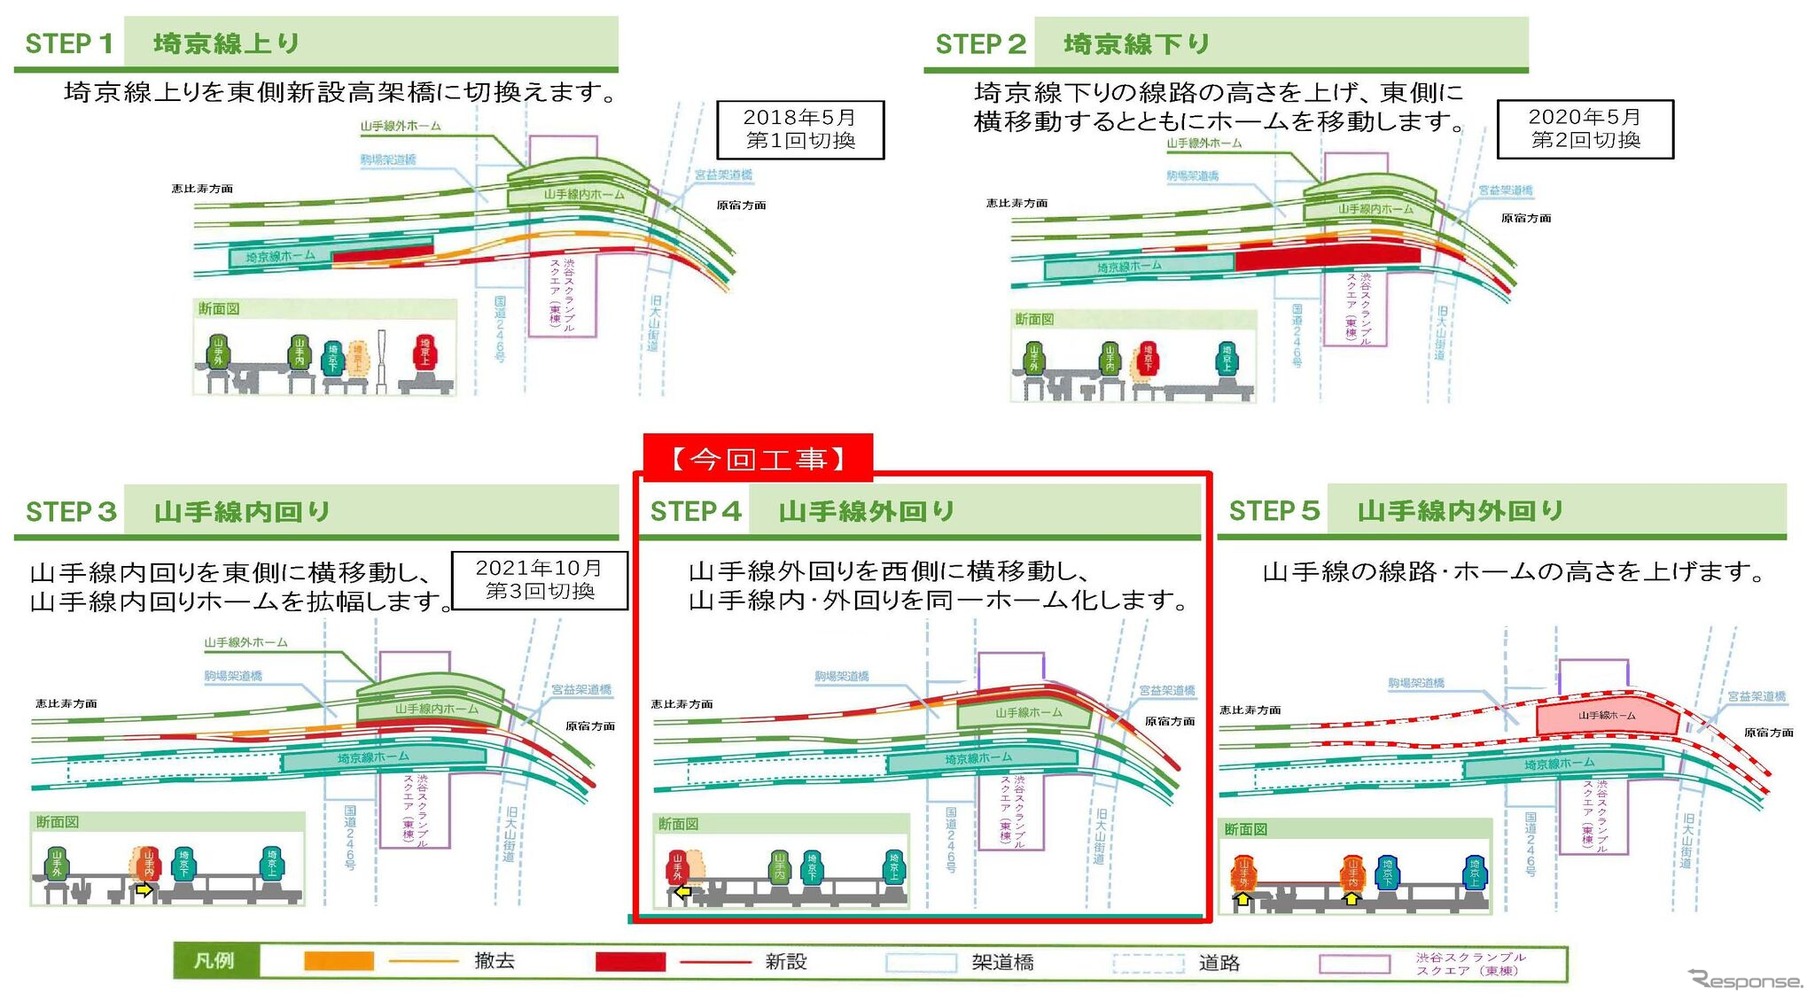 渋谷駅山手線ホーム島式化へ向けた工事の流れ。今回は第4段階にあたり、工事が終わると、内・外回りが同一面ホームでの発着となる。